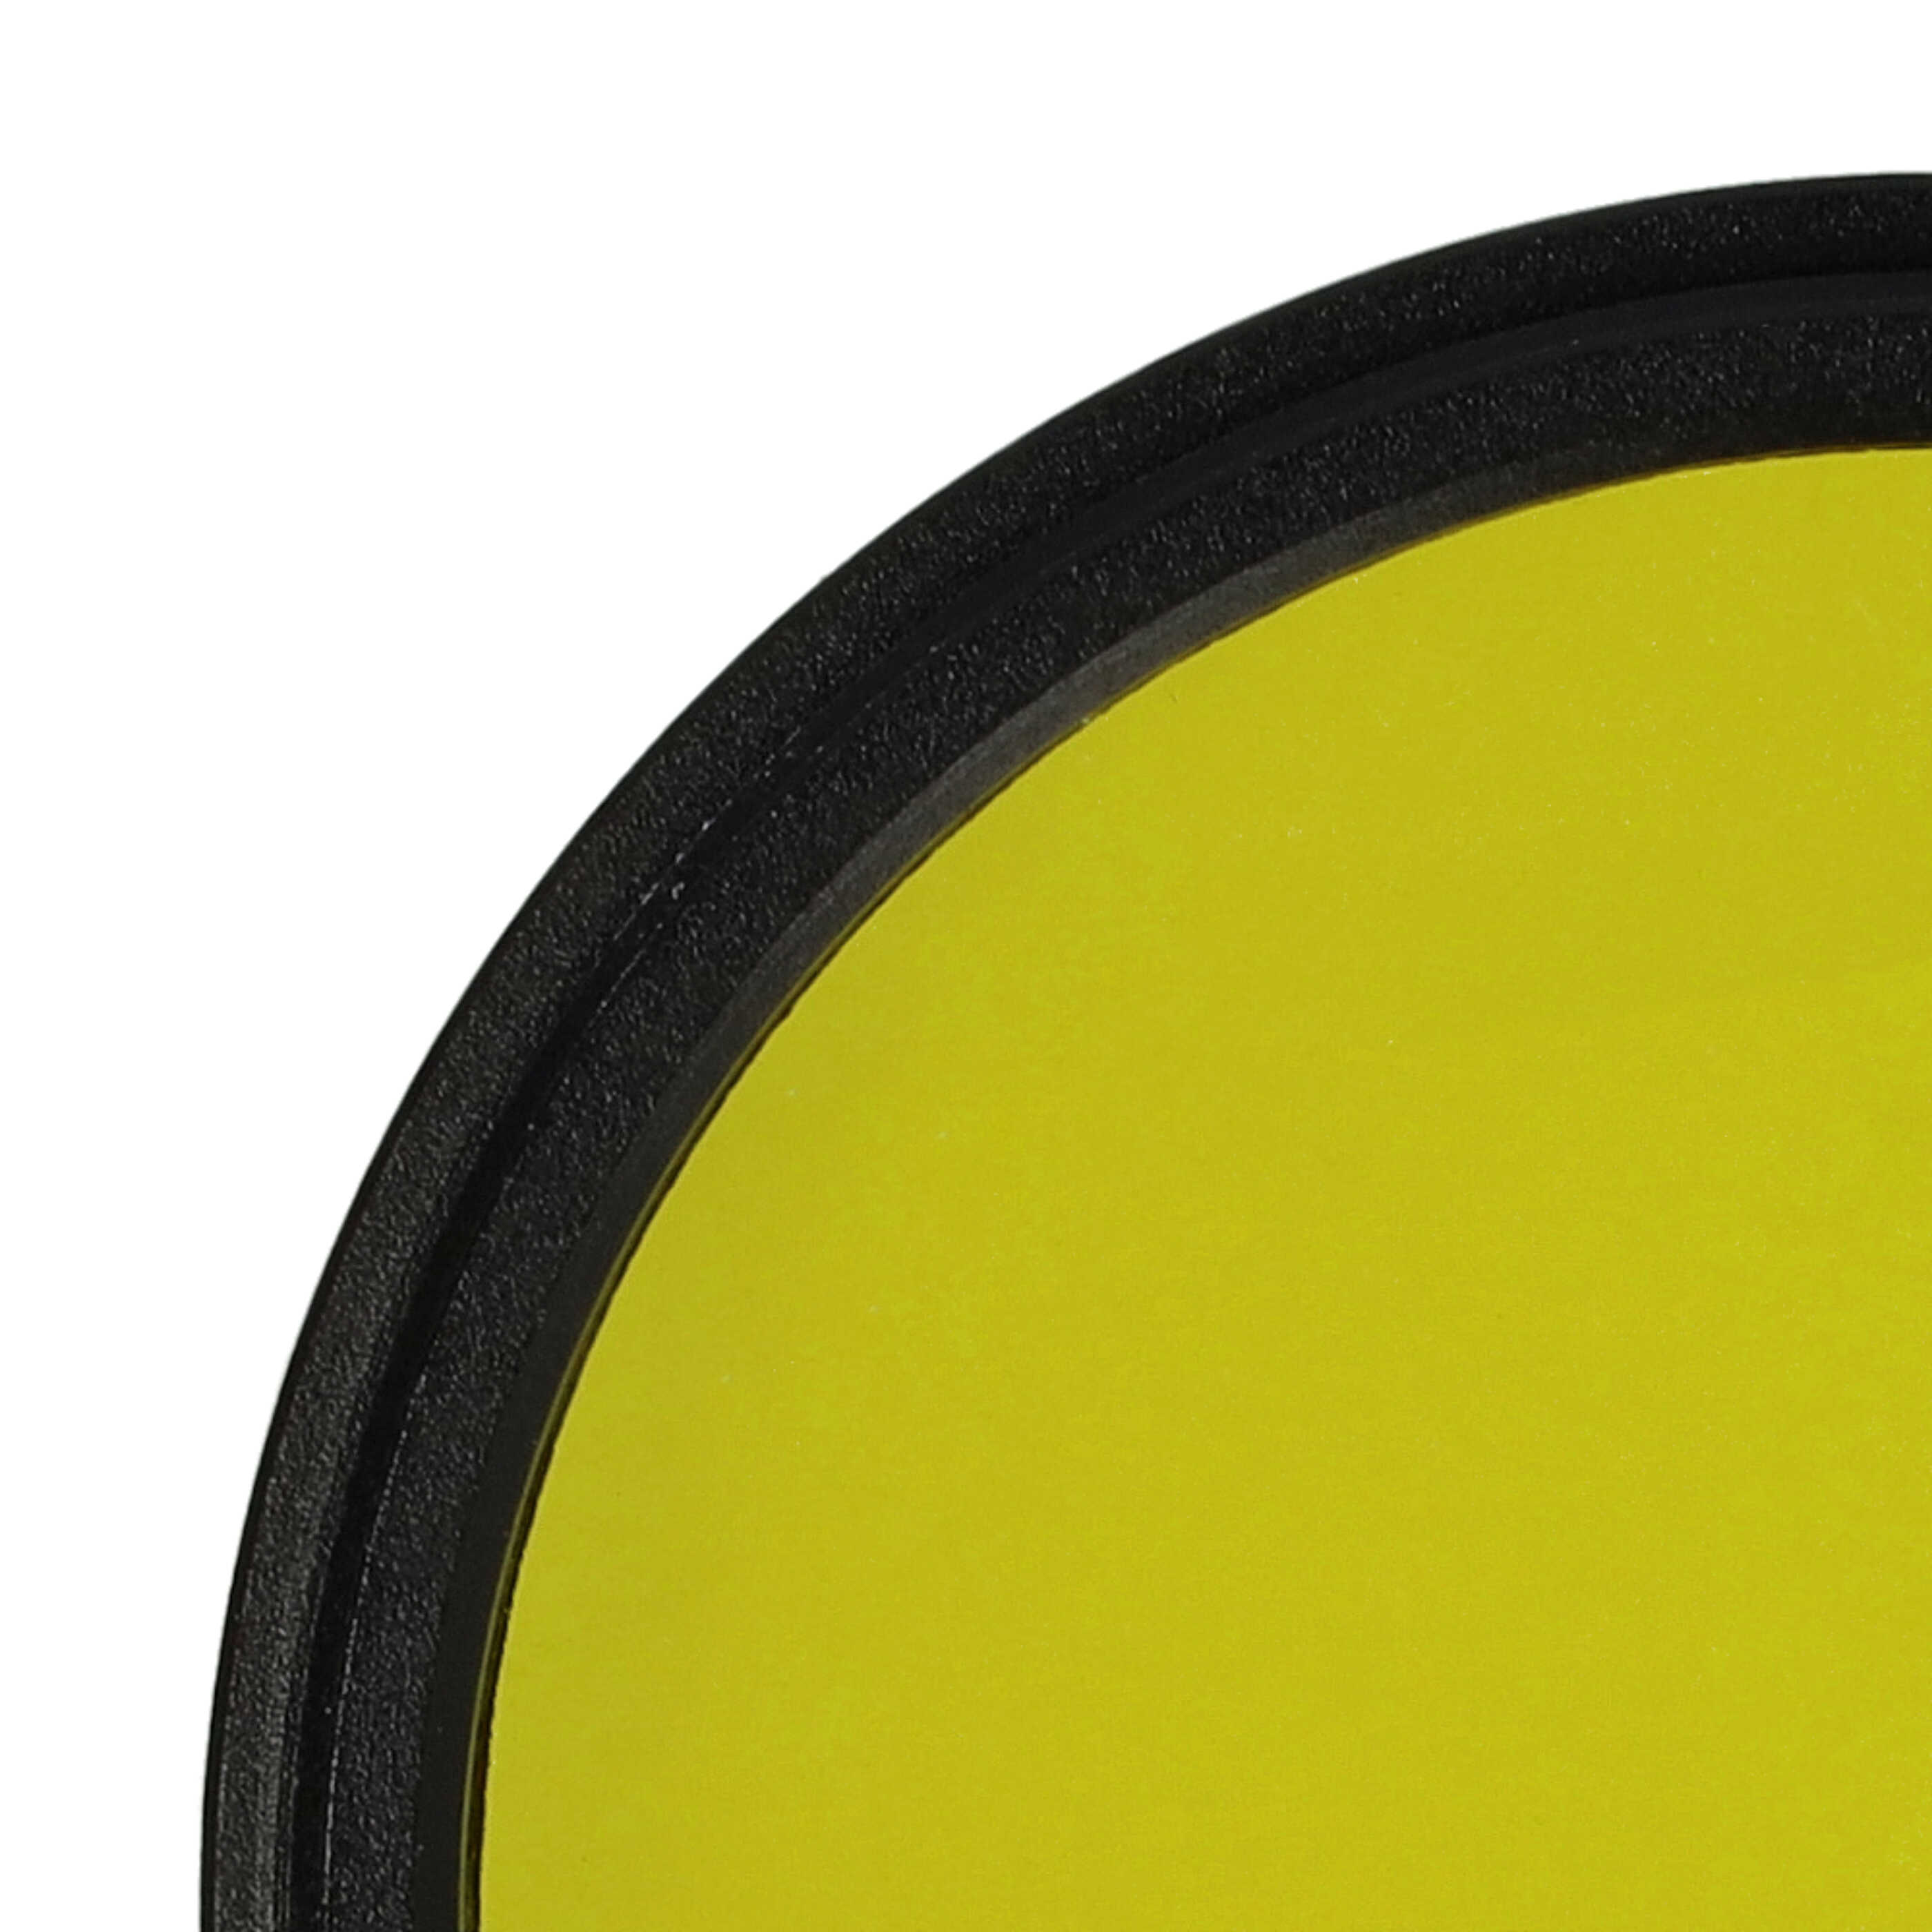 Filtro de color para objetivo de cámara con rosca de filtro de 43 mm - Filtro amarillo